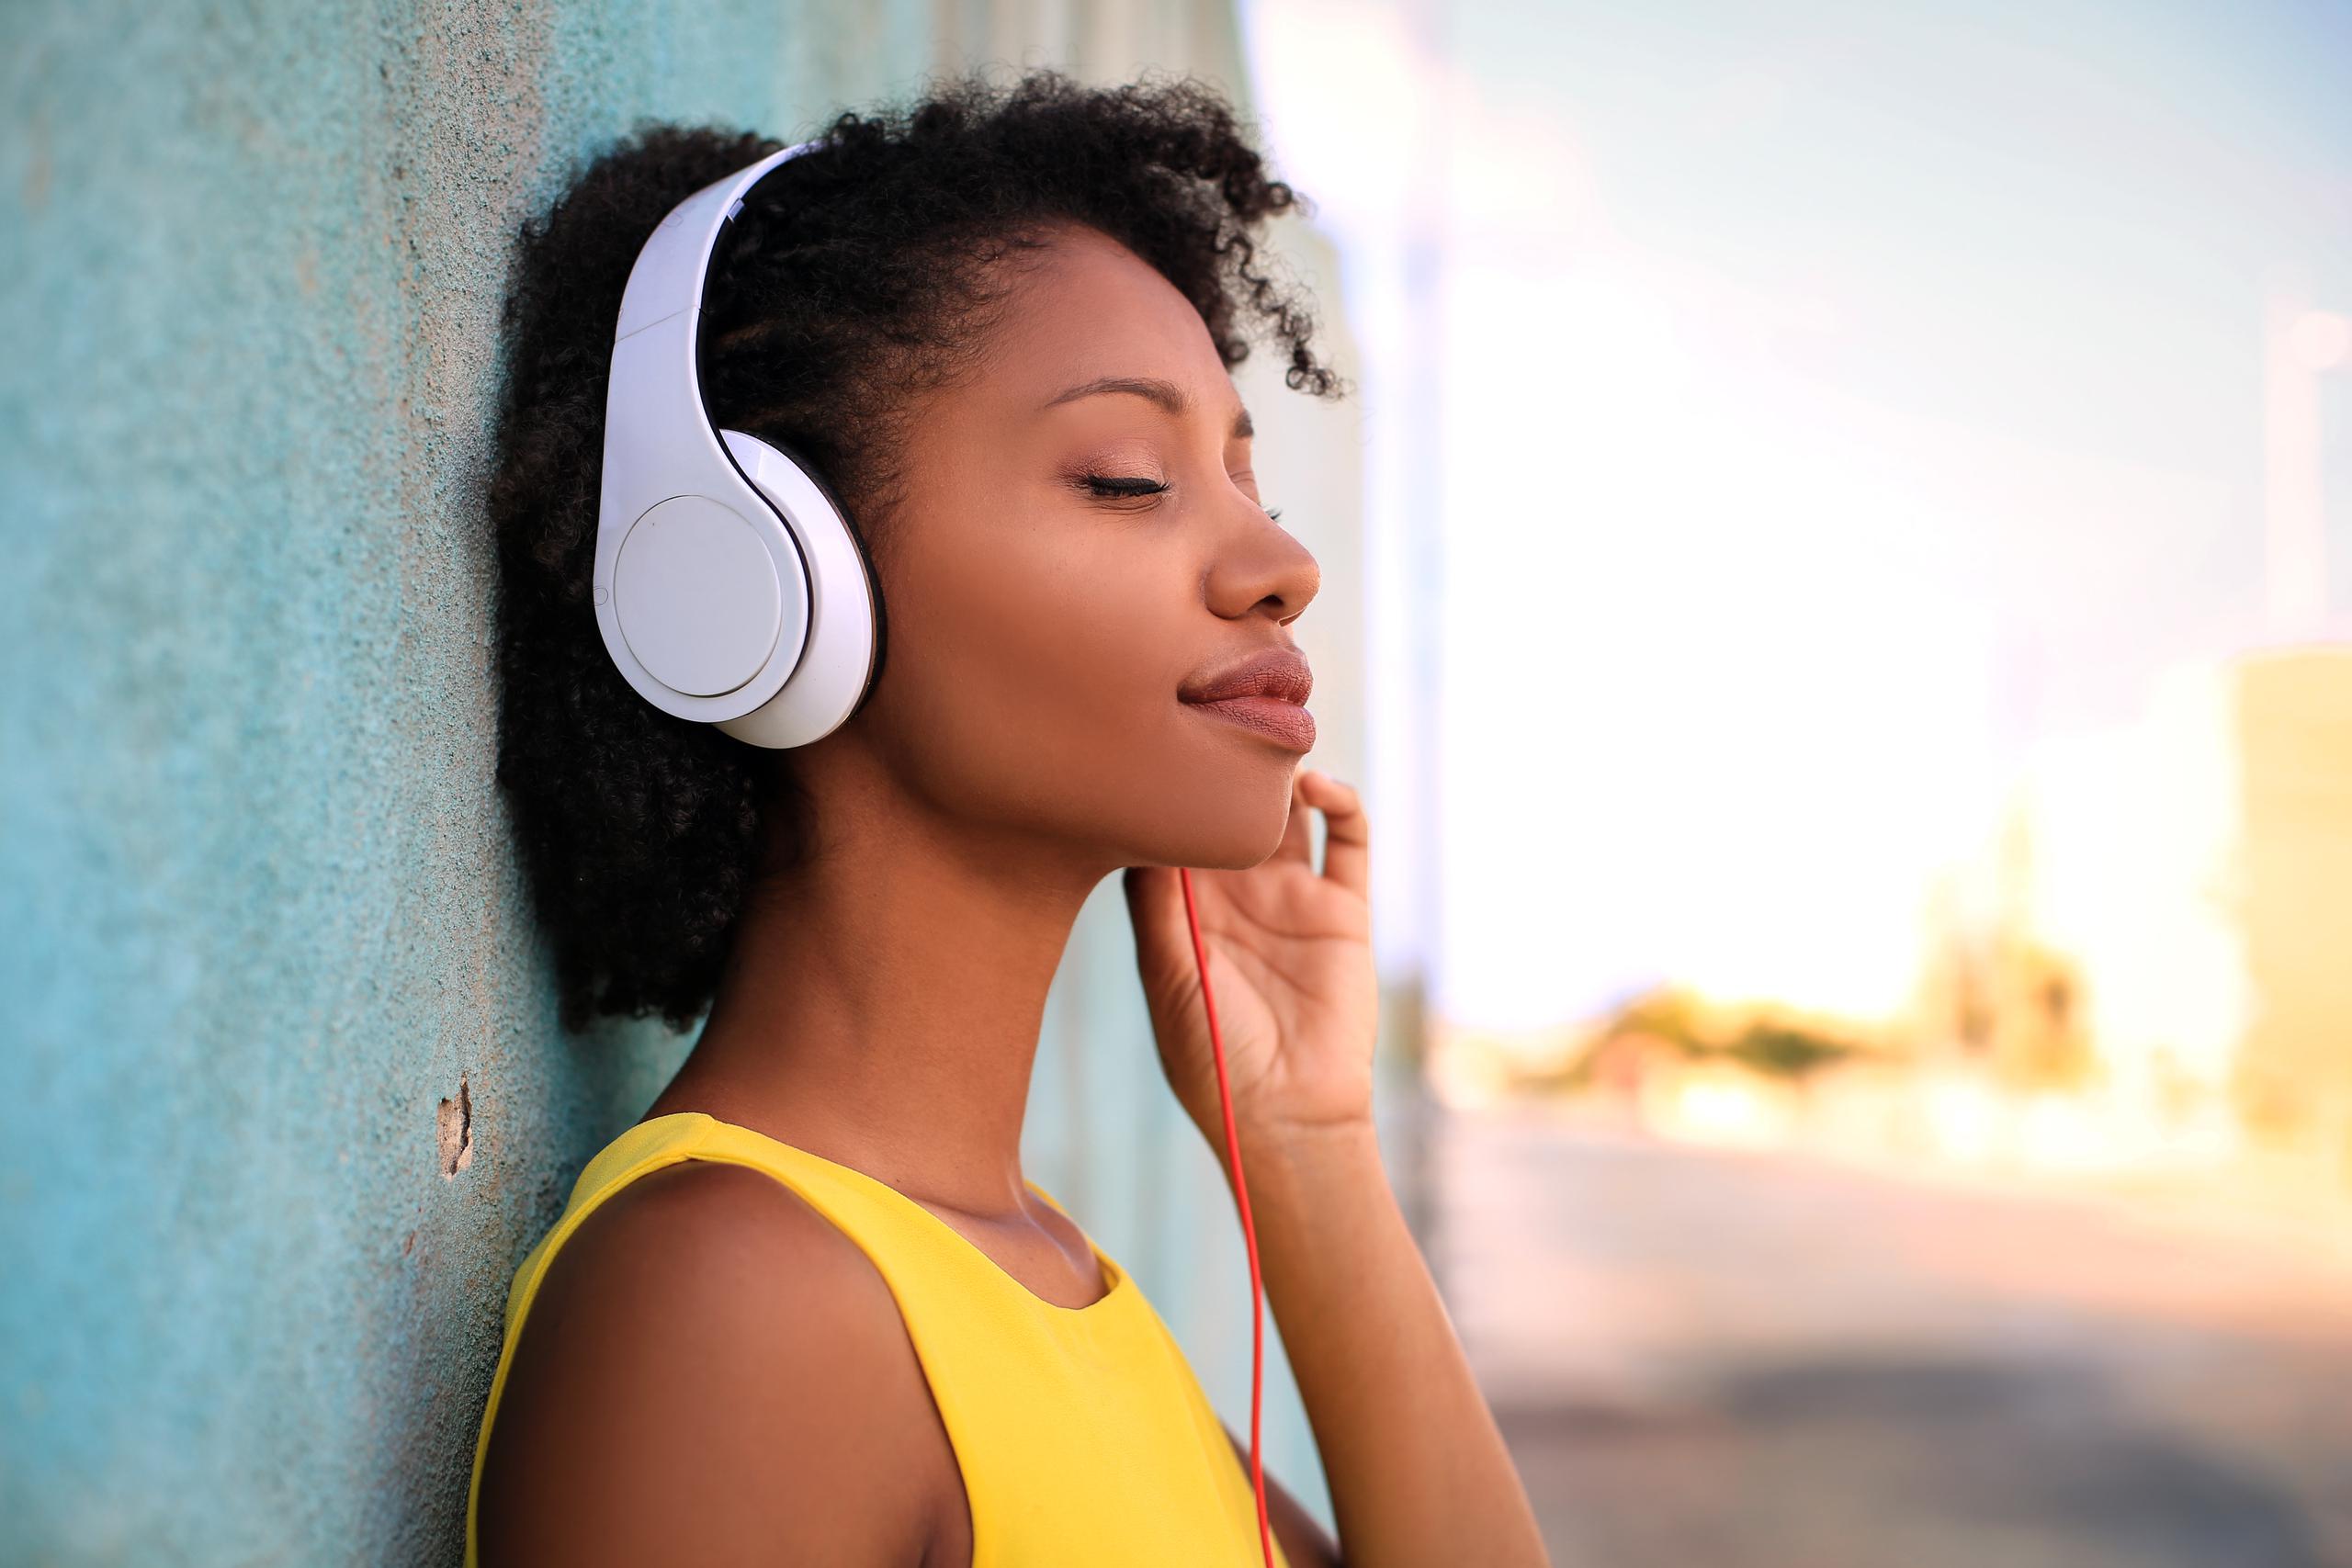 Escuchar tu música preferida te puede ayudar a calmar la ansiedad.